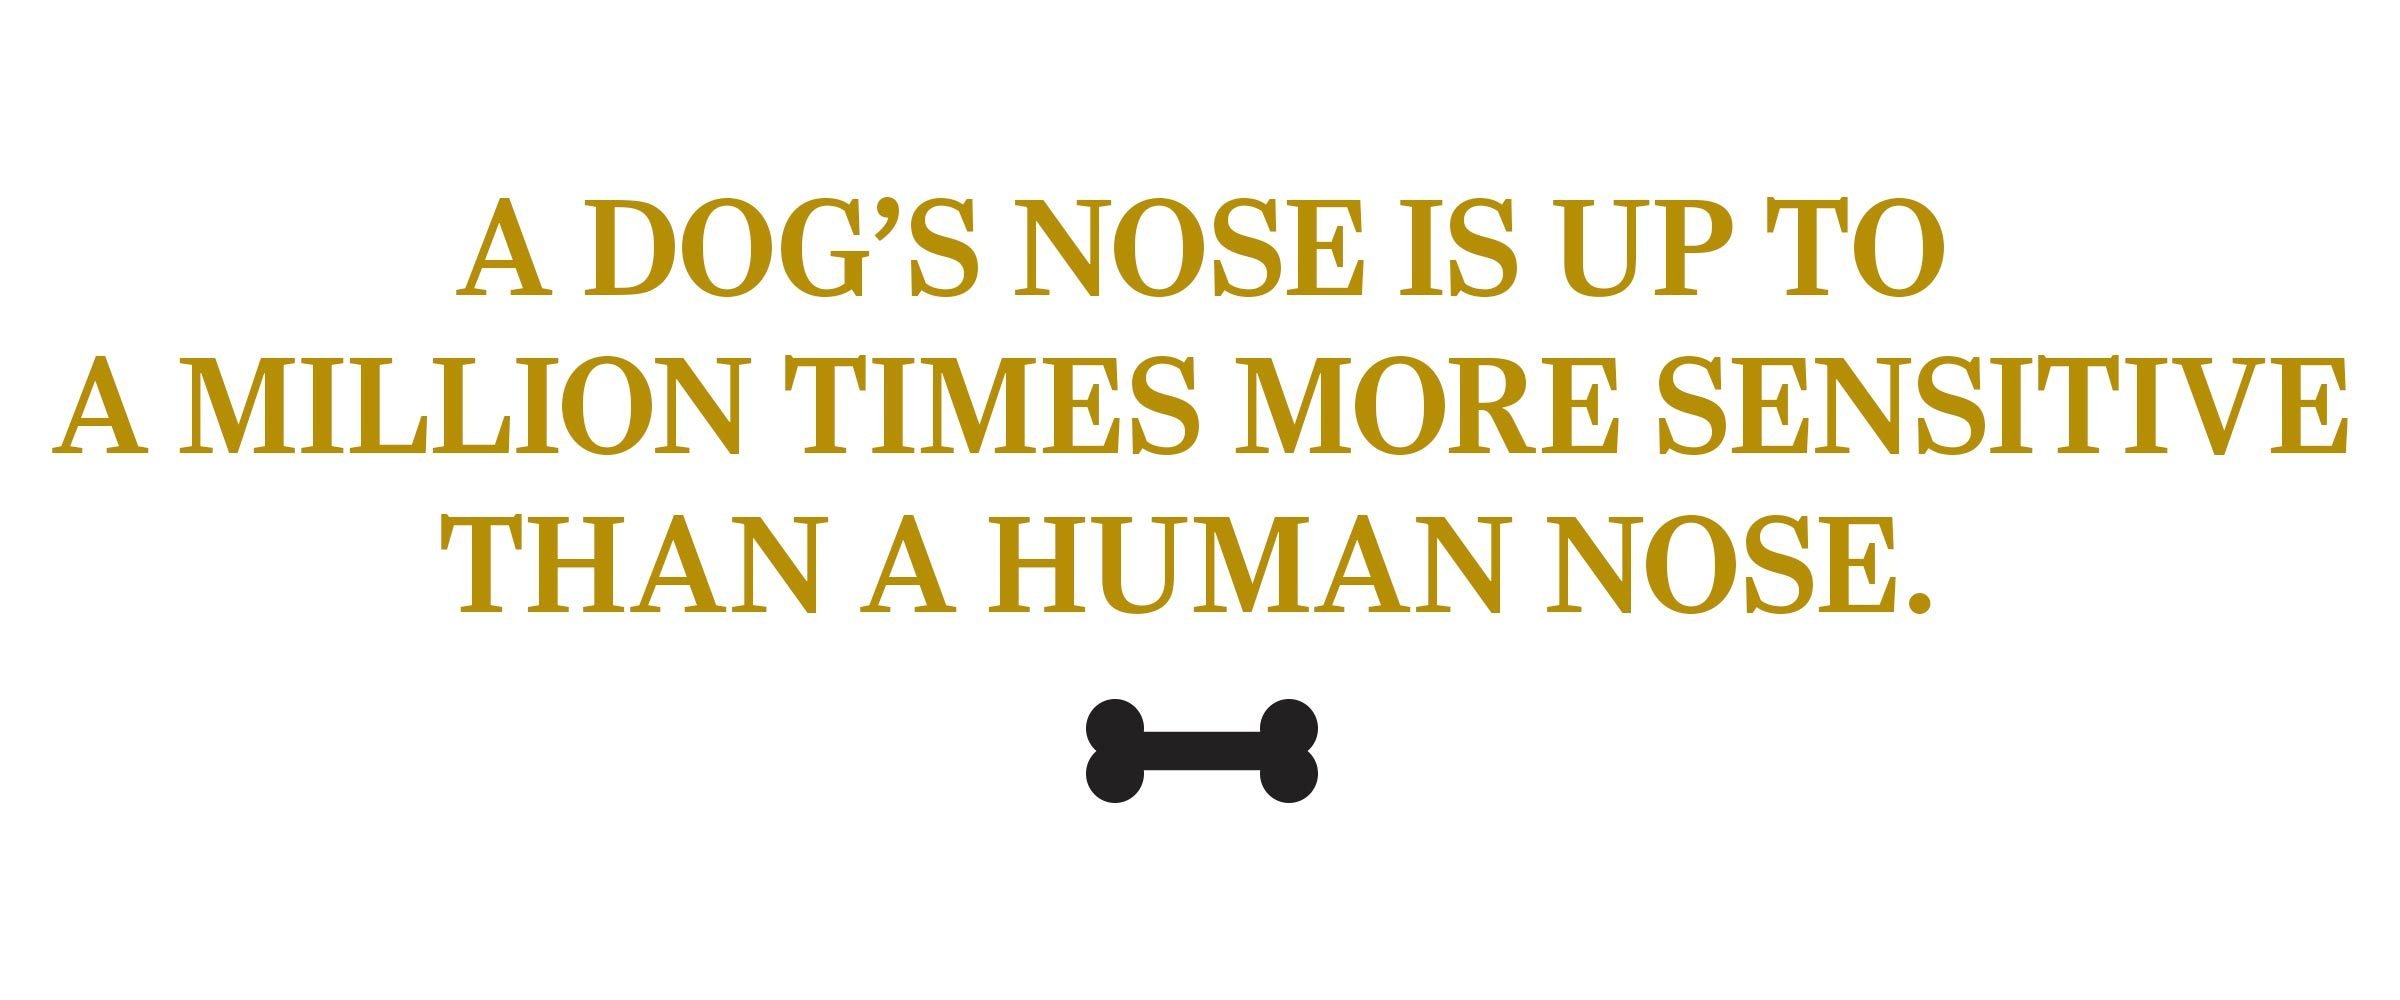 texto: La nariz de un perro es hasta un millón de veces más sensible que la nariz humana. 